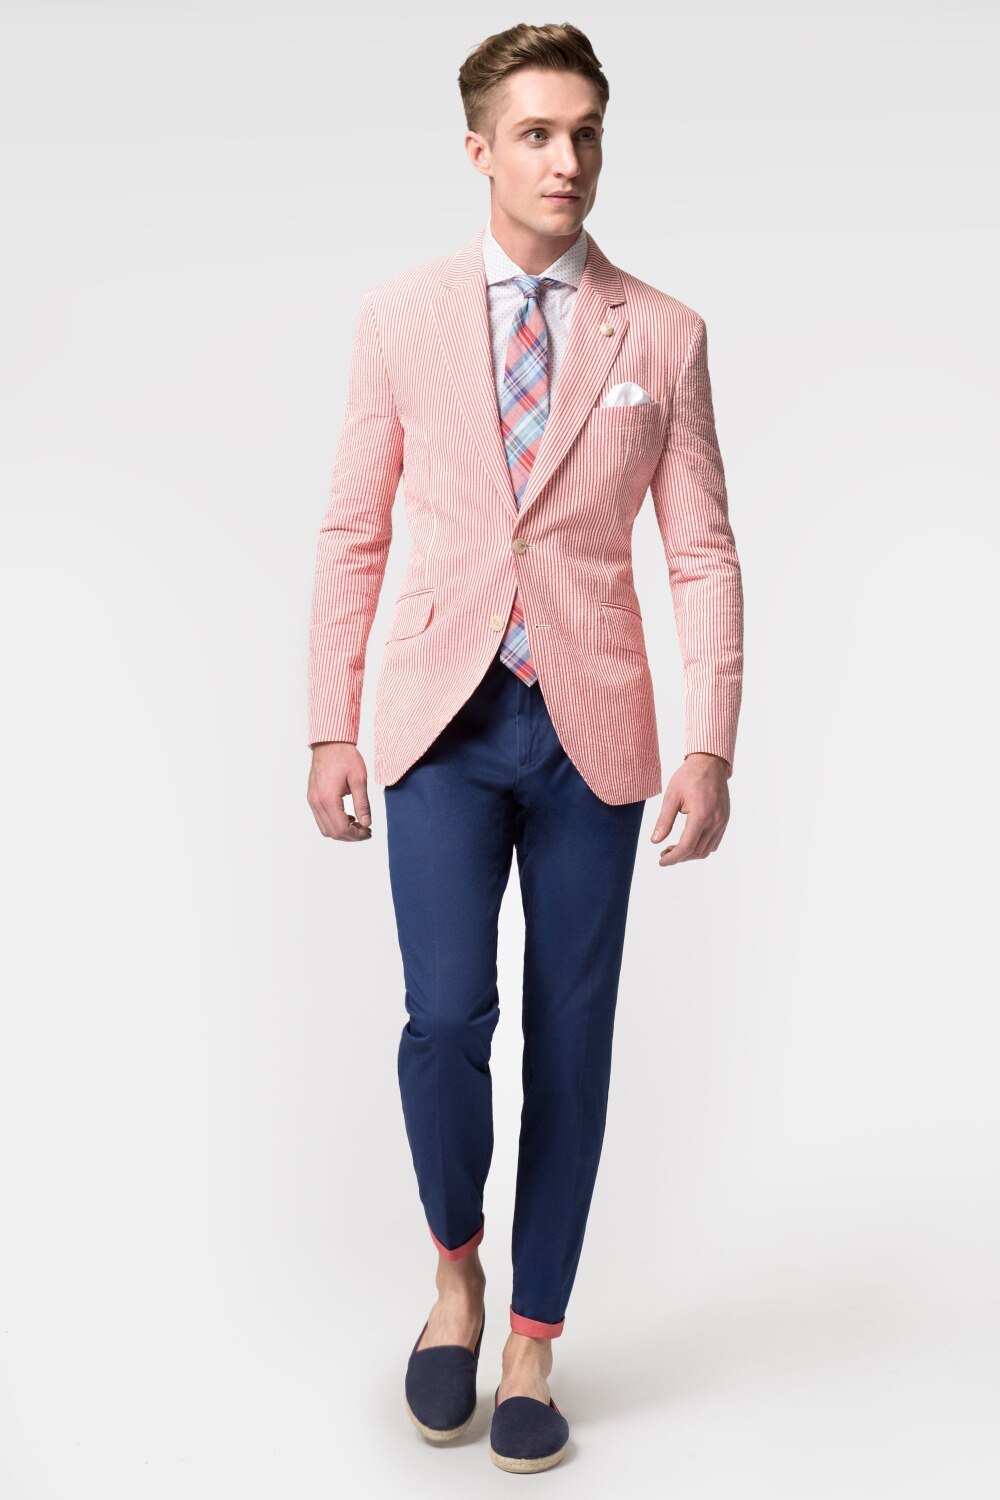 New-Fashion-Casual-Mens-slim-fit-blazer-Jasje-rode-streep-seersucker-blazers-mannen.jpg